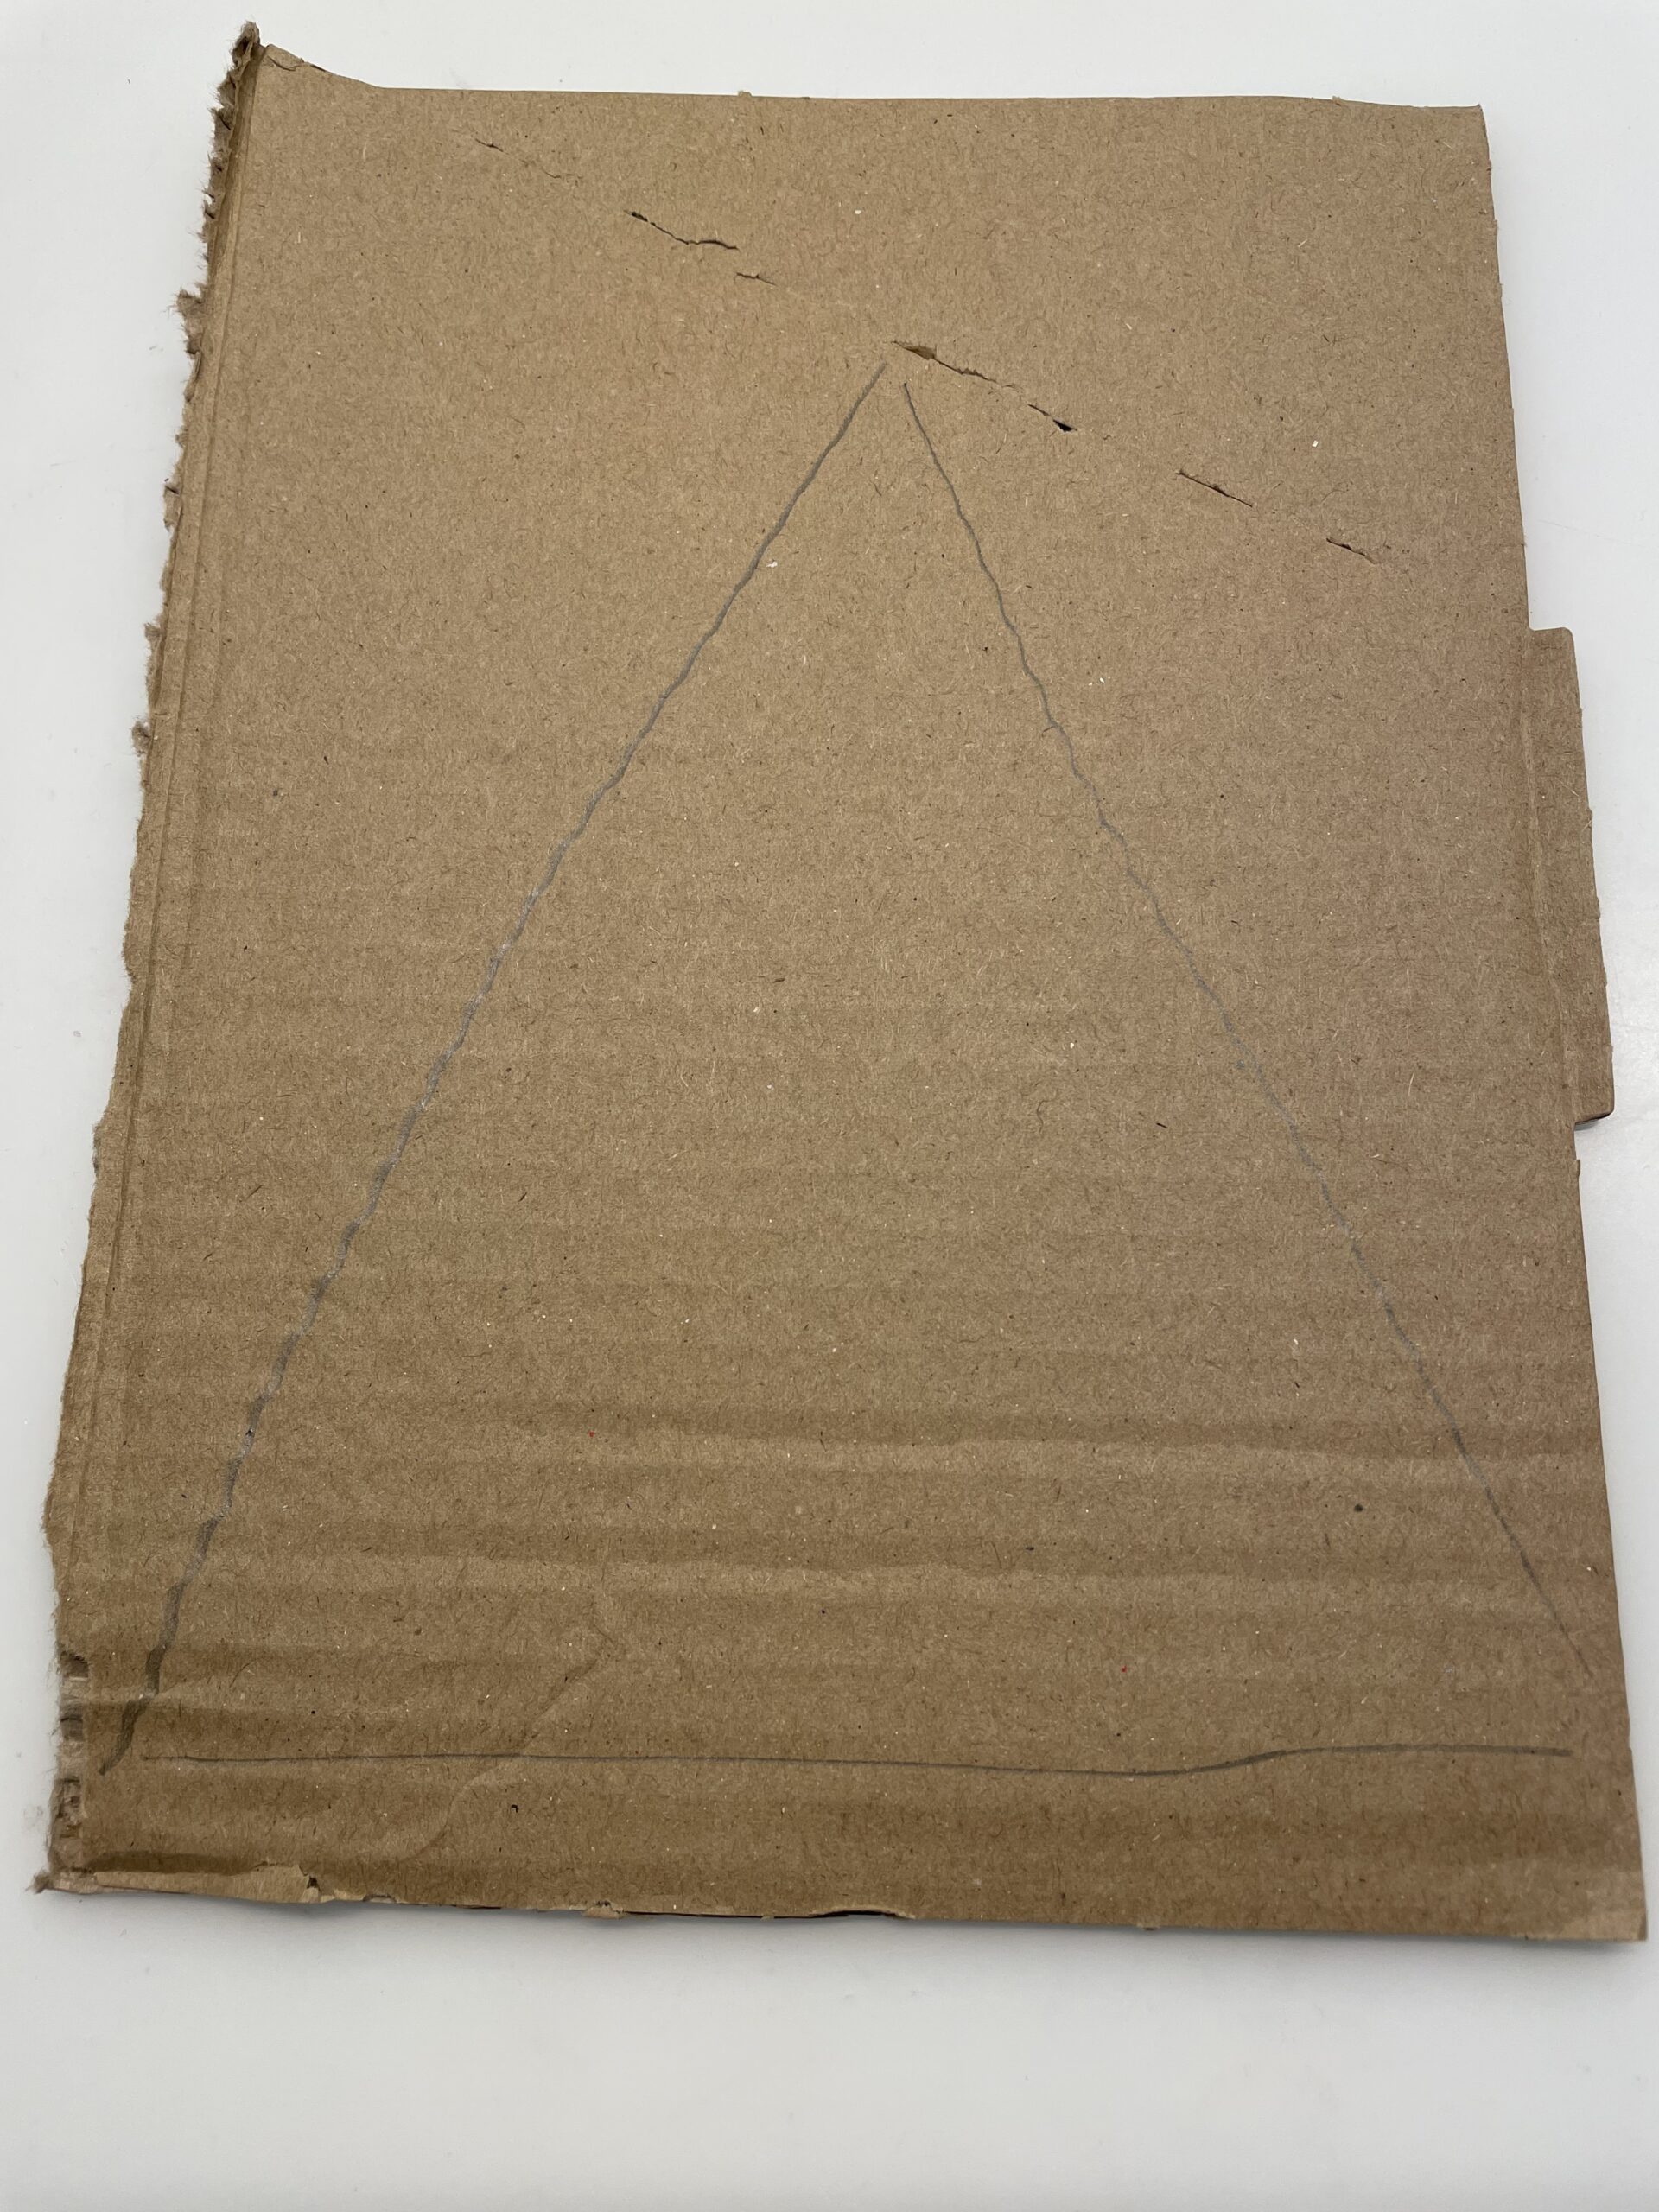 Bild zum Schritt 2 für das Bastel- und DIY-Abenteuer für Kinder: 'Dann malt ihr ein großes spitzes Dreieck auf den Karton....'